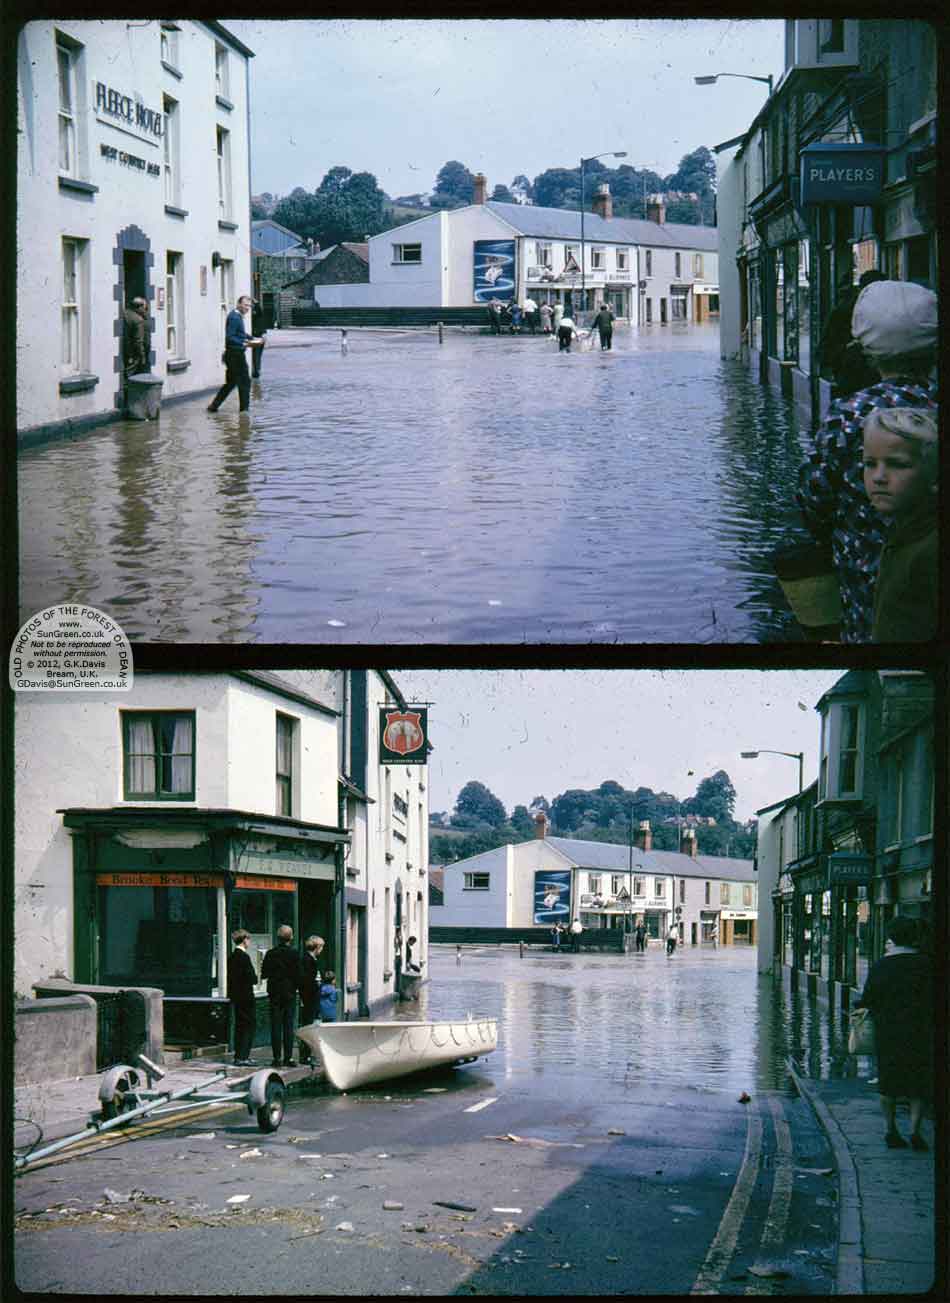 Floods in Lydney in 1968